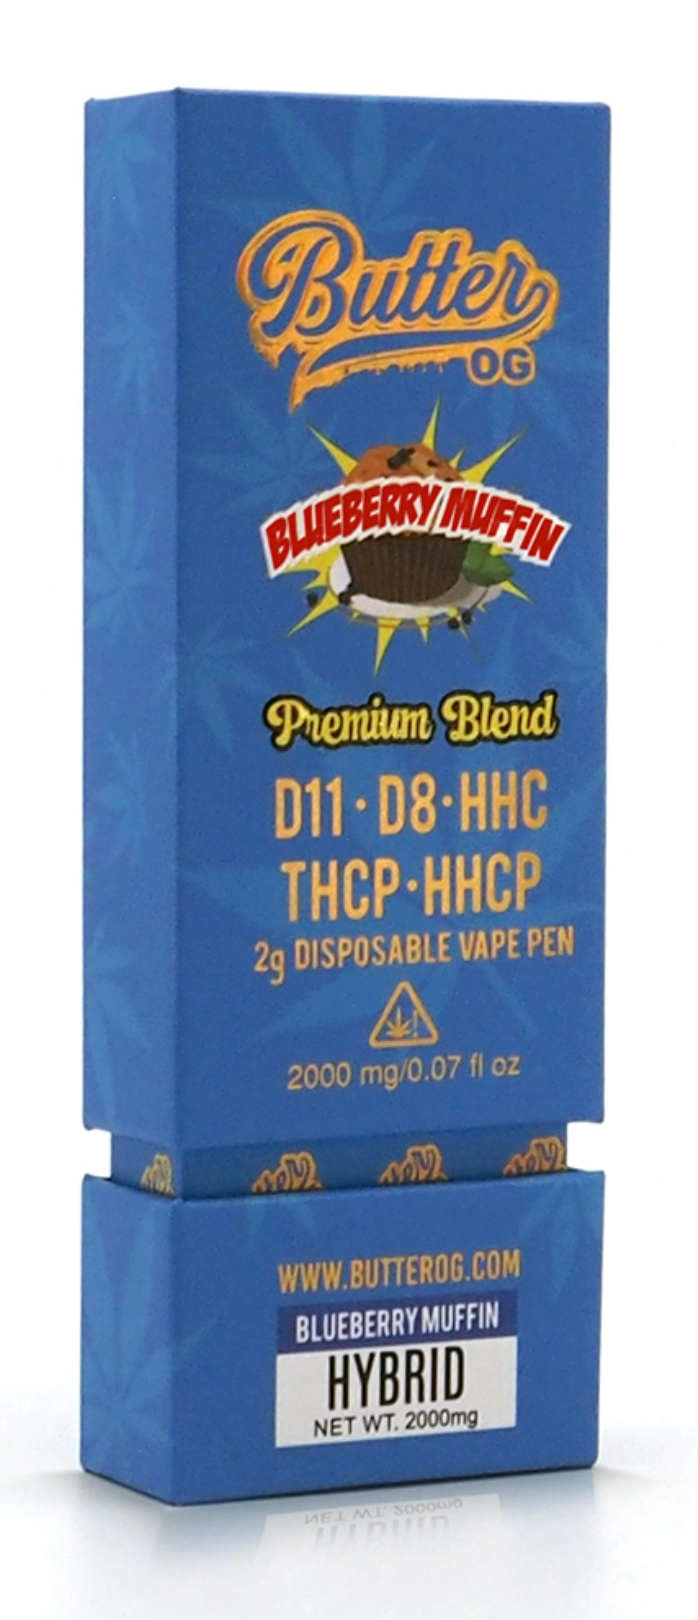 Butter OG Premium Blend D11, D8, HHC, THCP, HHCP 2g Disposable Vape - Blueberry Muffin (Hybrid) - Headshop.com